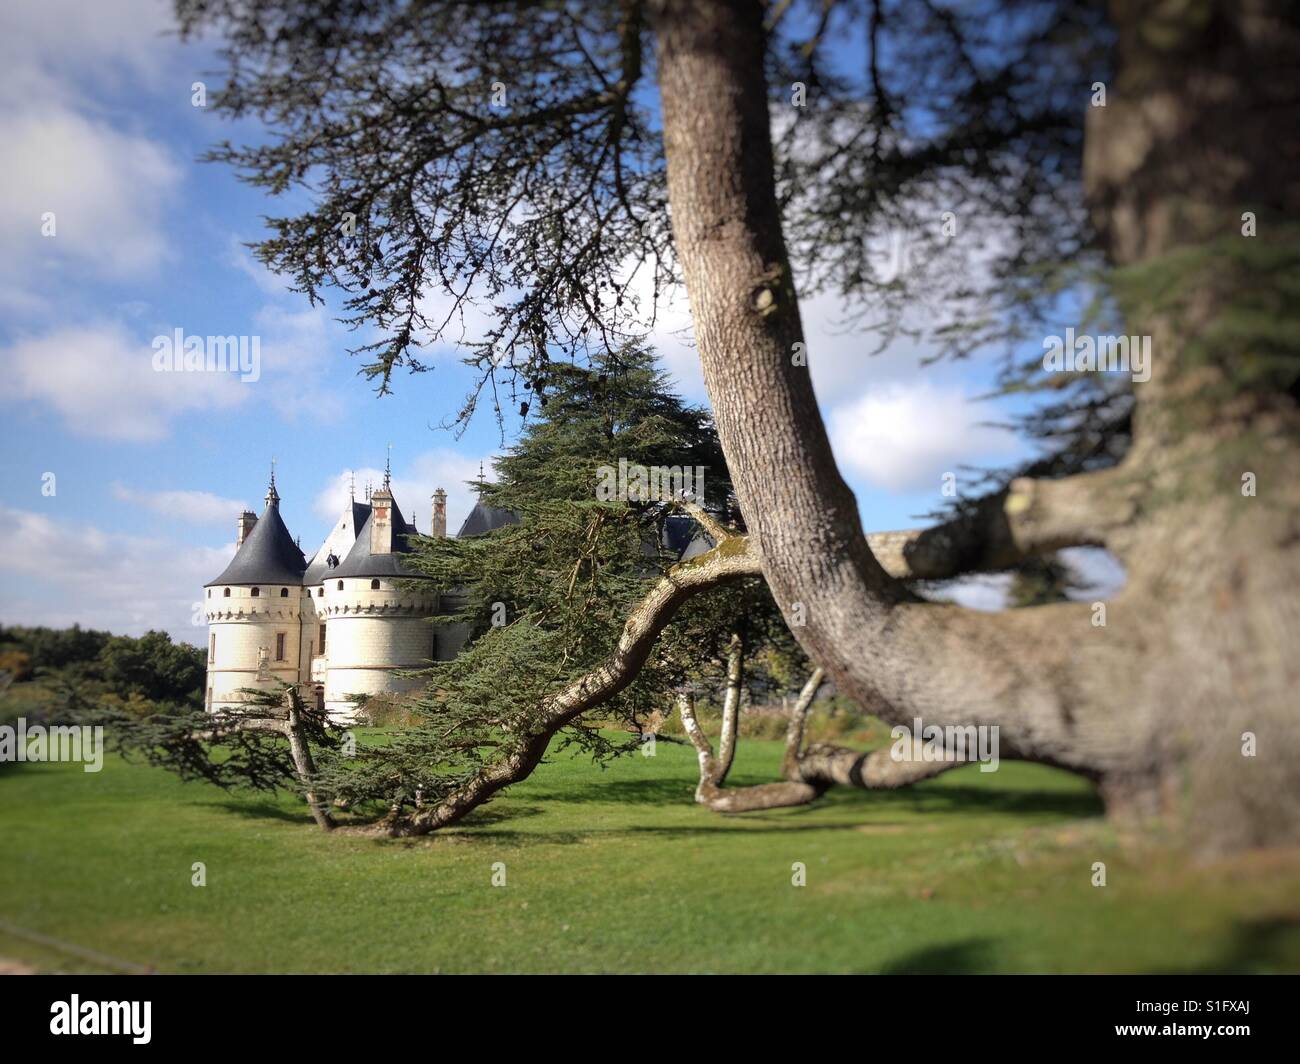 Chaumont Castle, France Stock Photo